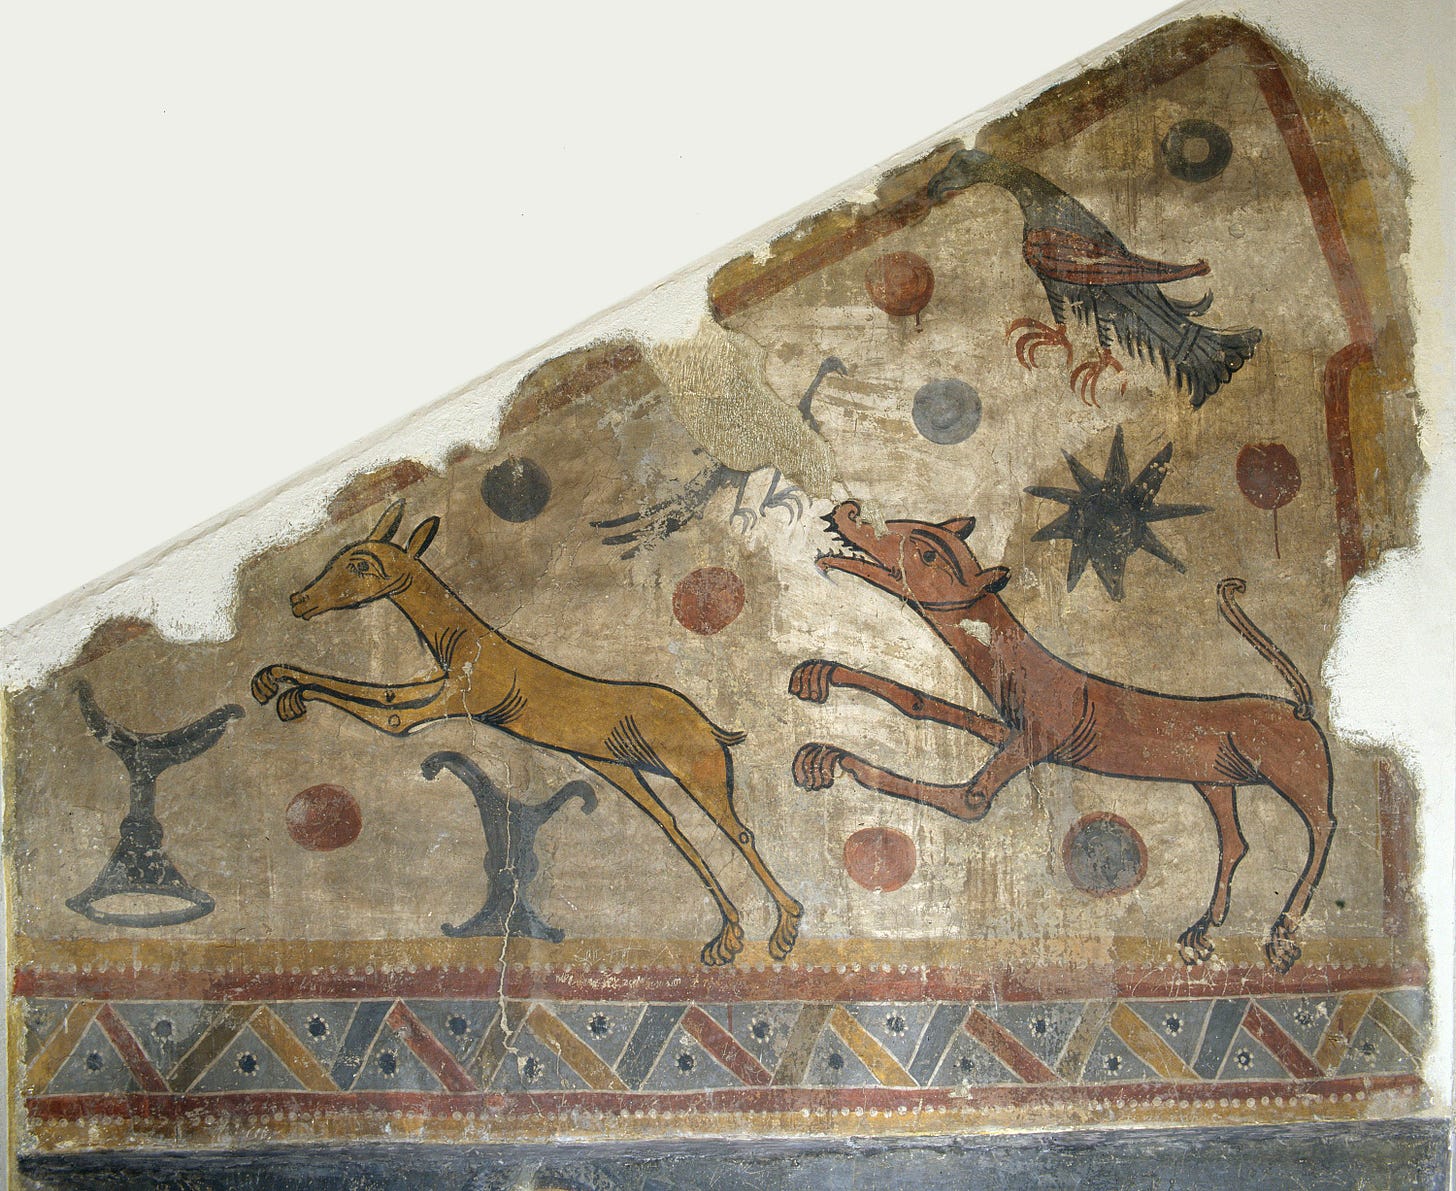 Mestre de Santa Maria de Taüll - Wolf pursuing a gazelle from Santa Maria de Taüll - After 1123